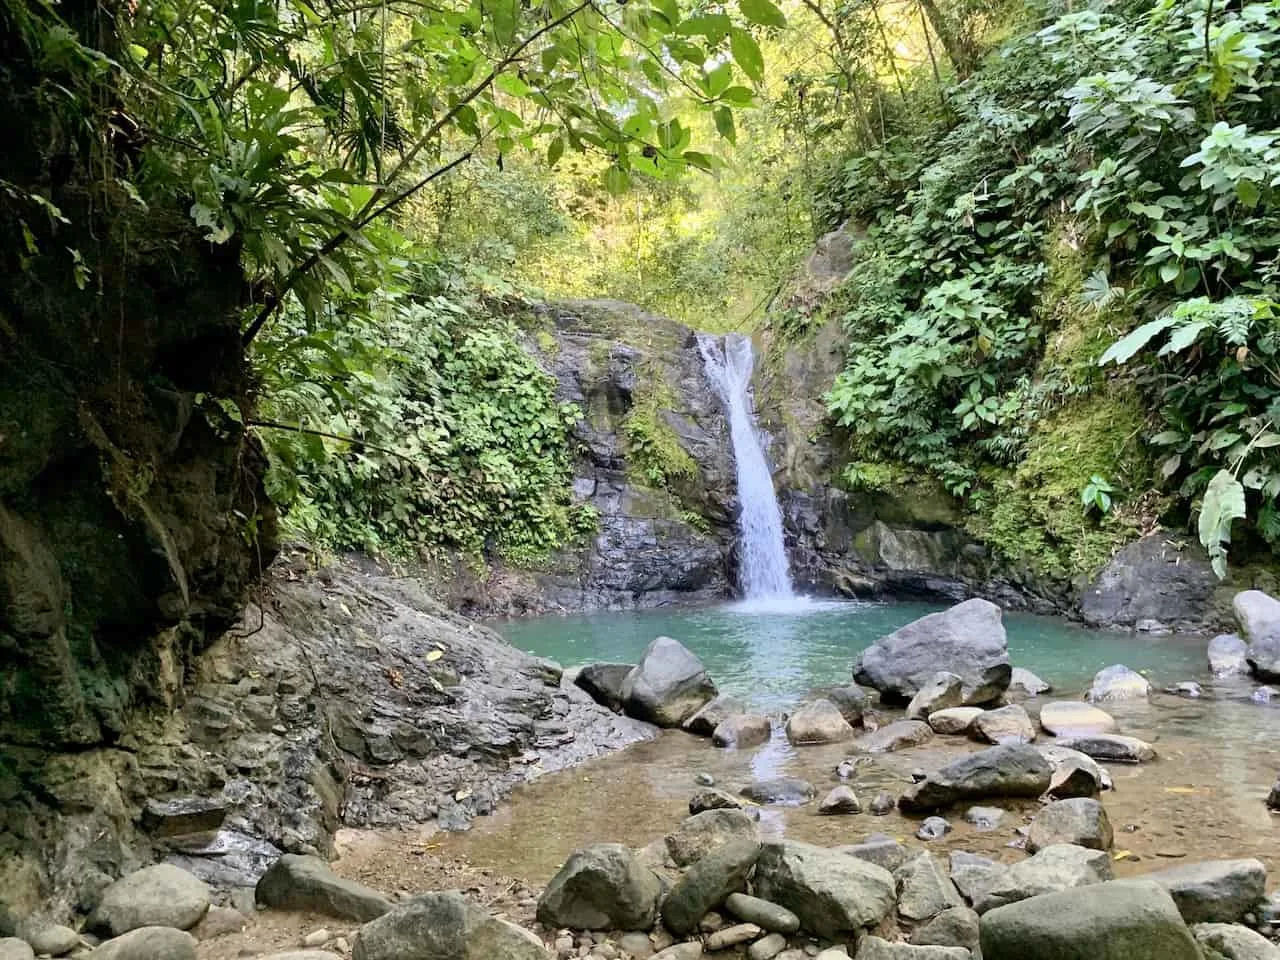 Uvita Waterfall Costa Rica